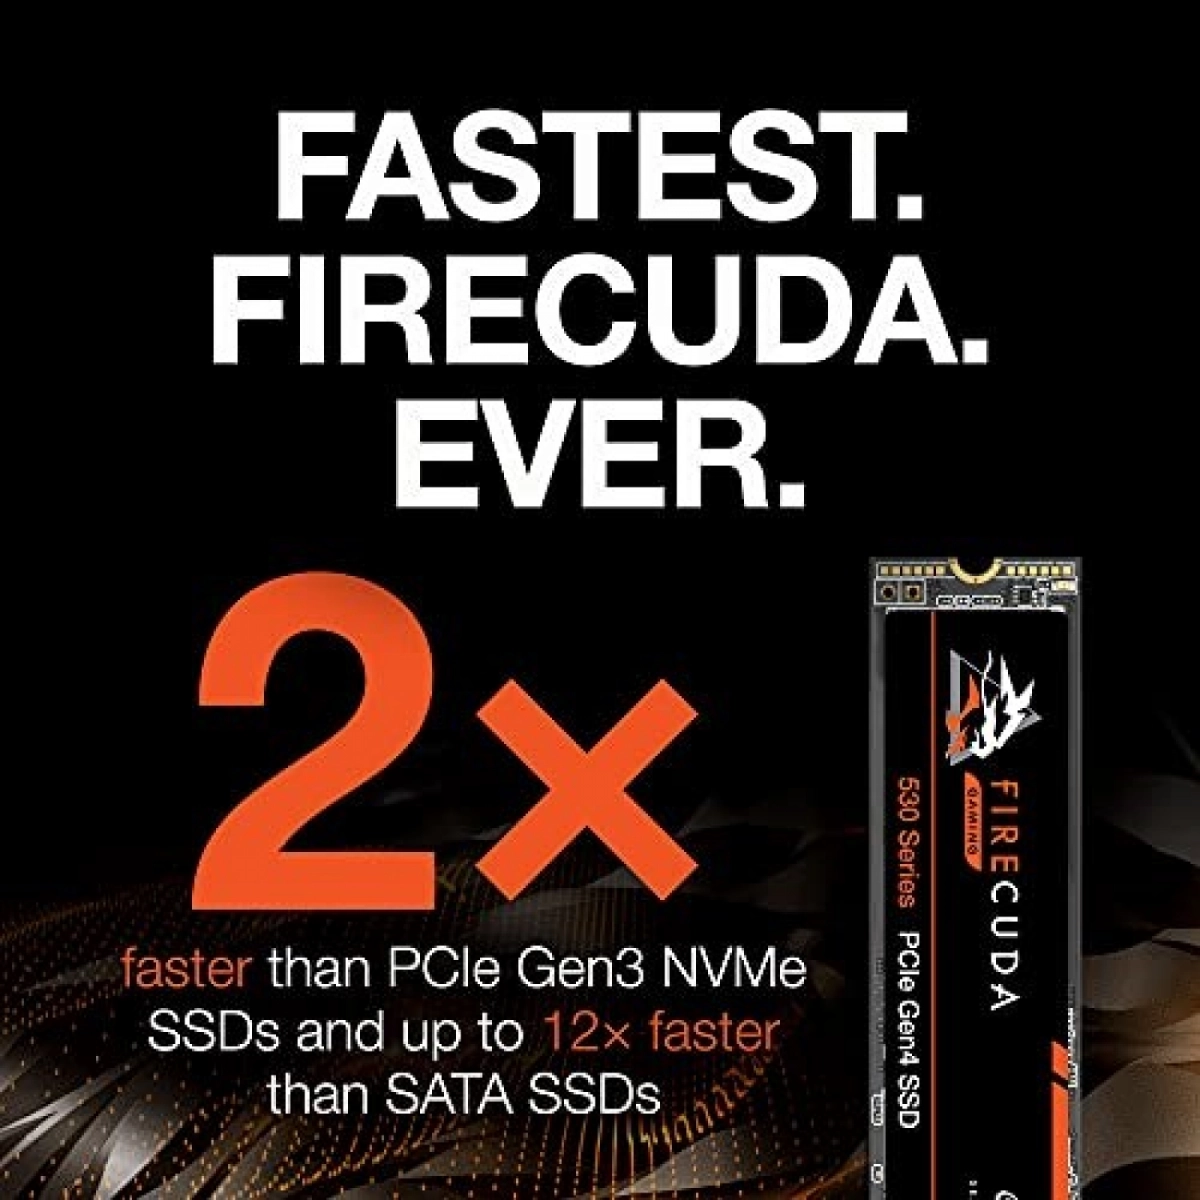 Seagate FireCuda 530 SSD 500GB PCI Express 4.0 x4 NVMe (ZP500GM3A013)